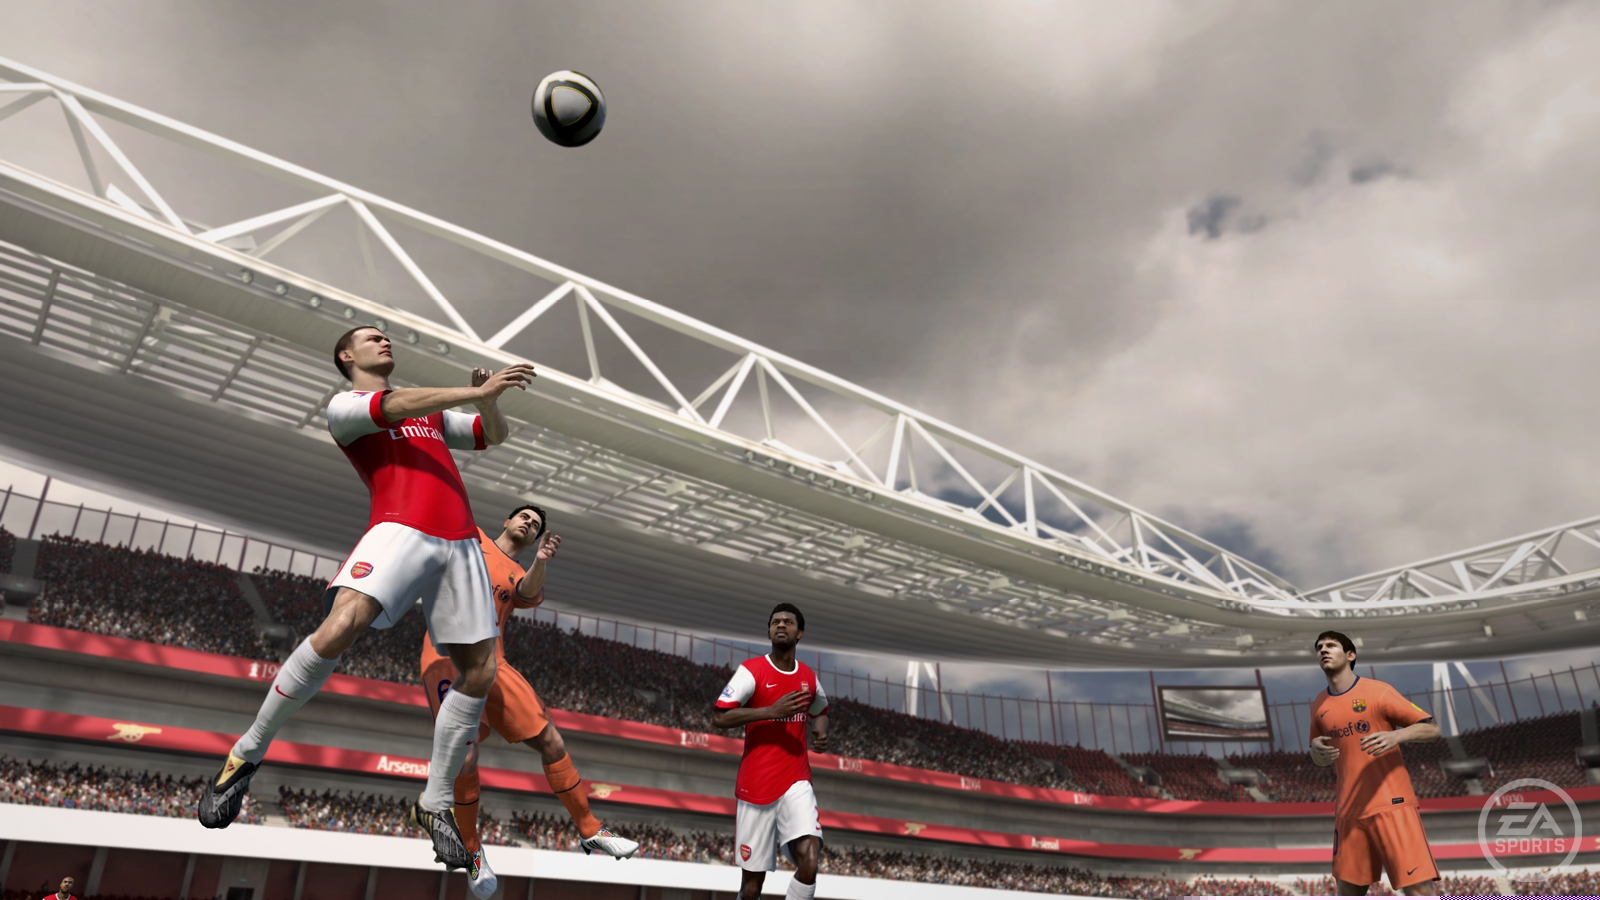 Скриншот из игры FIFA 11 под номером 19